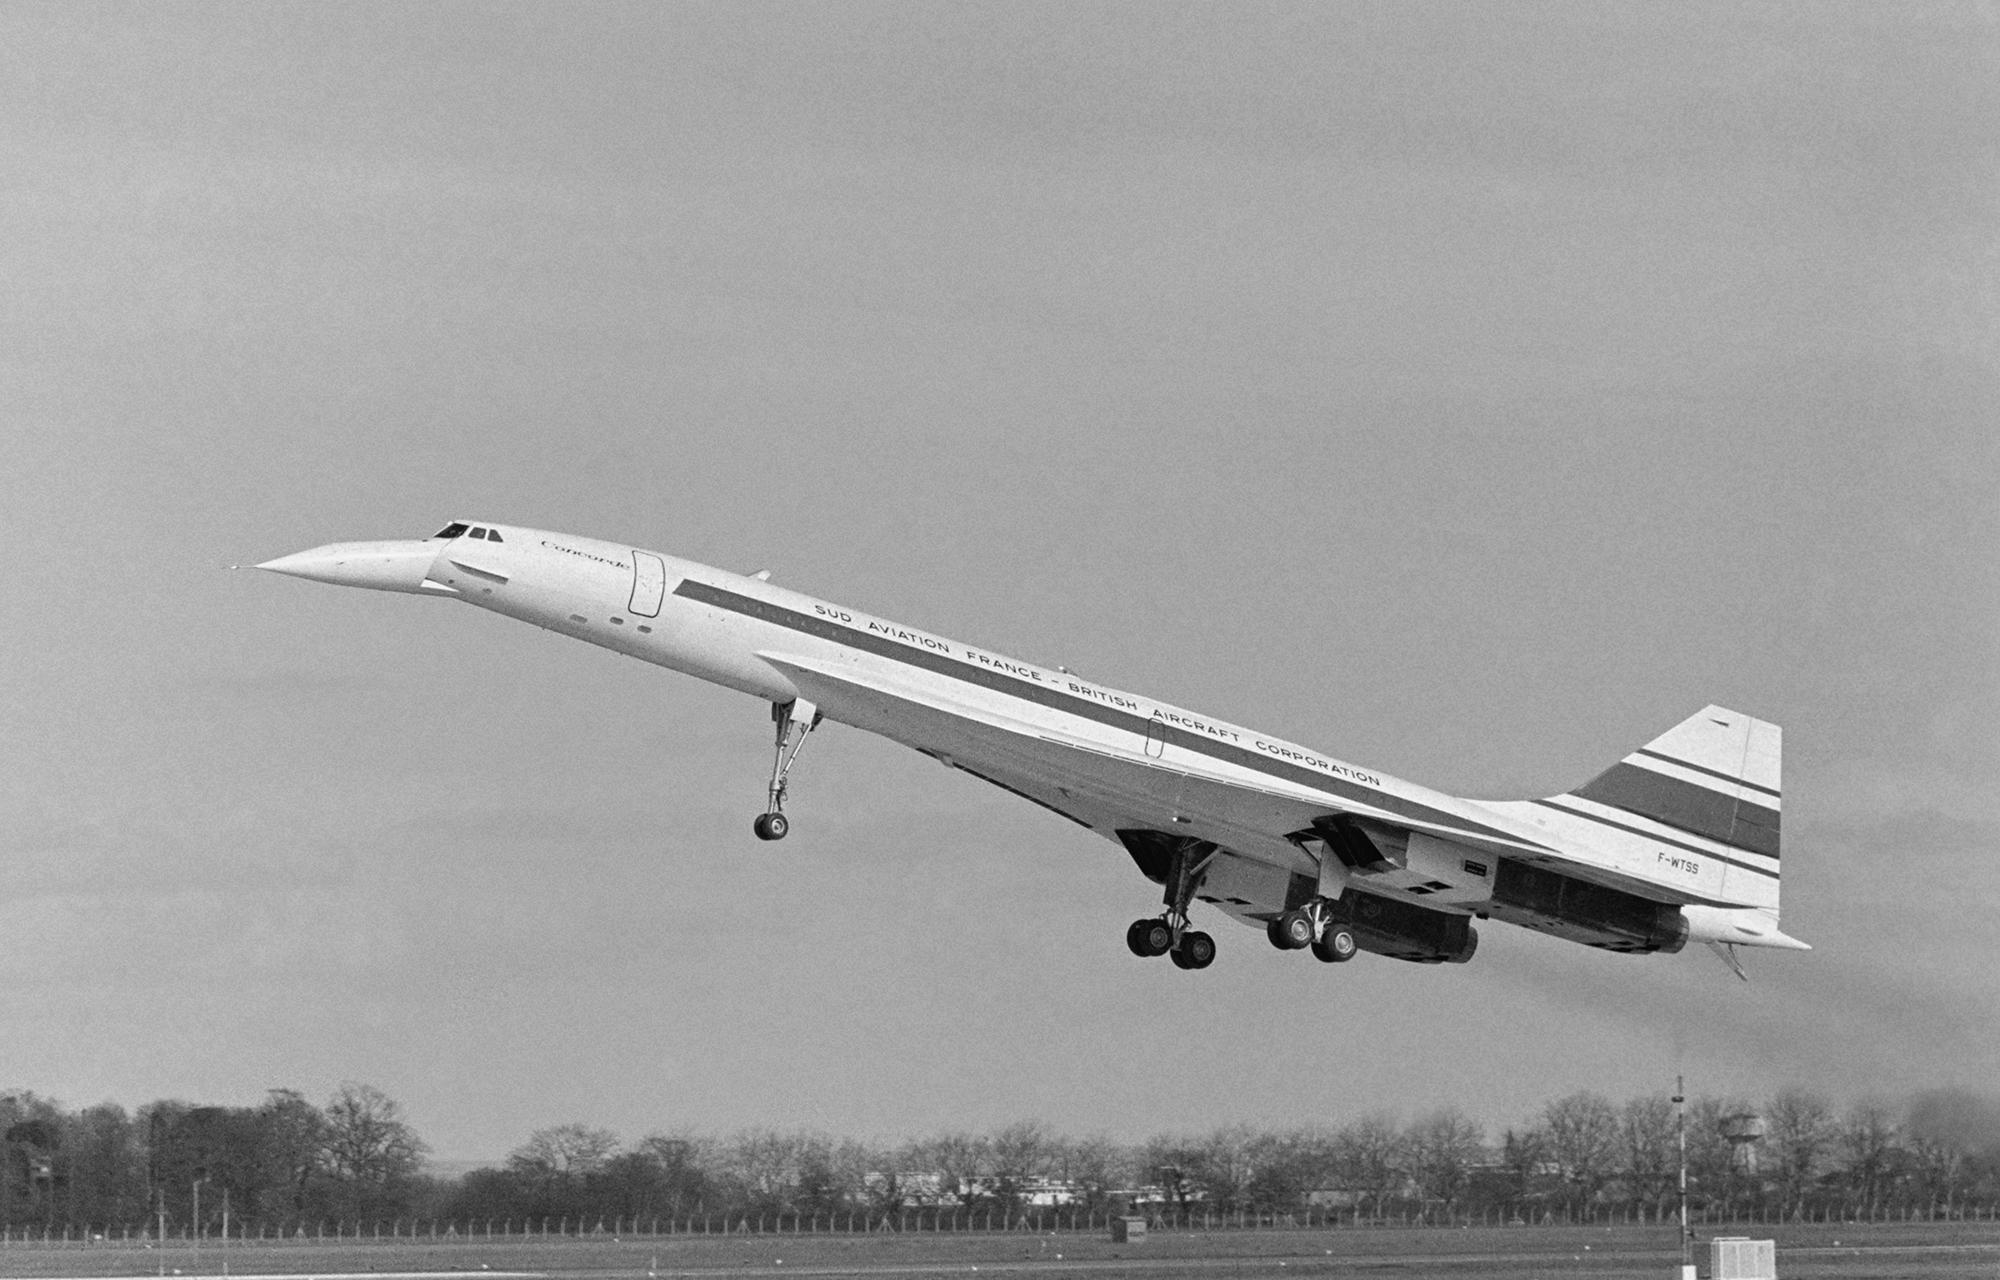 Le Concorde, supersonique franco-anglais, se pose après son 1er vol en 1969.AFP